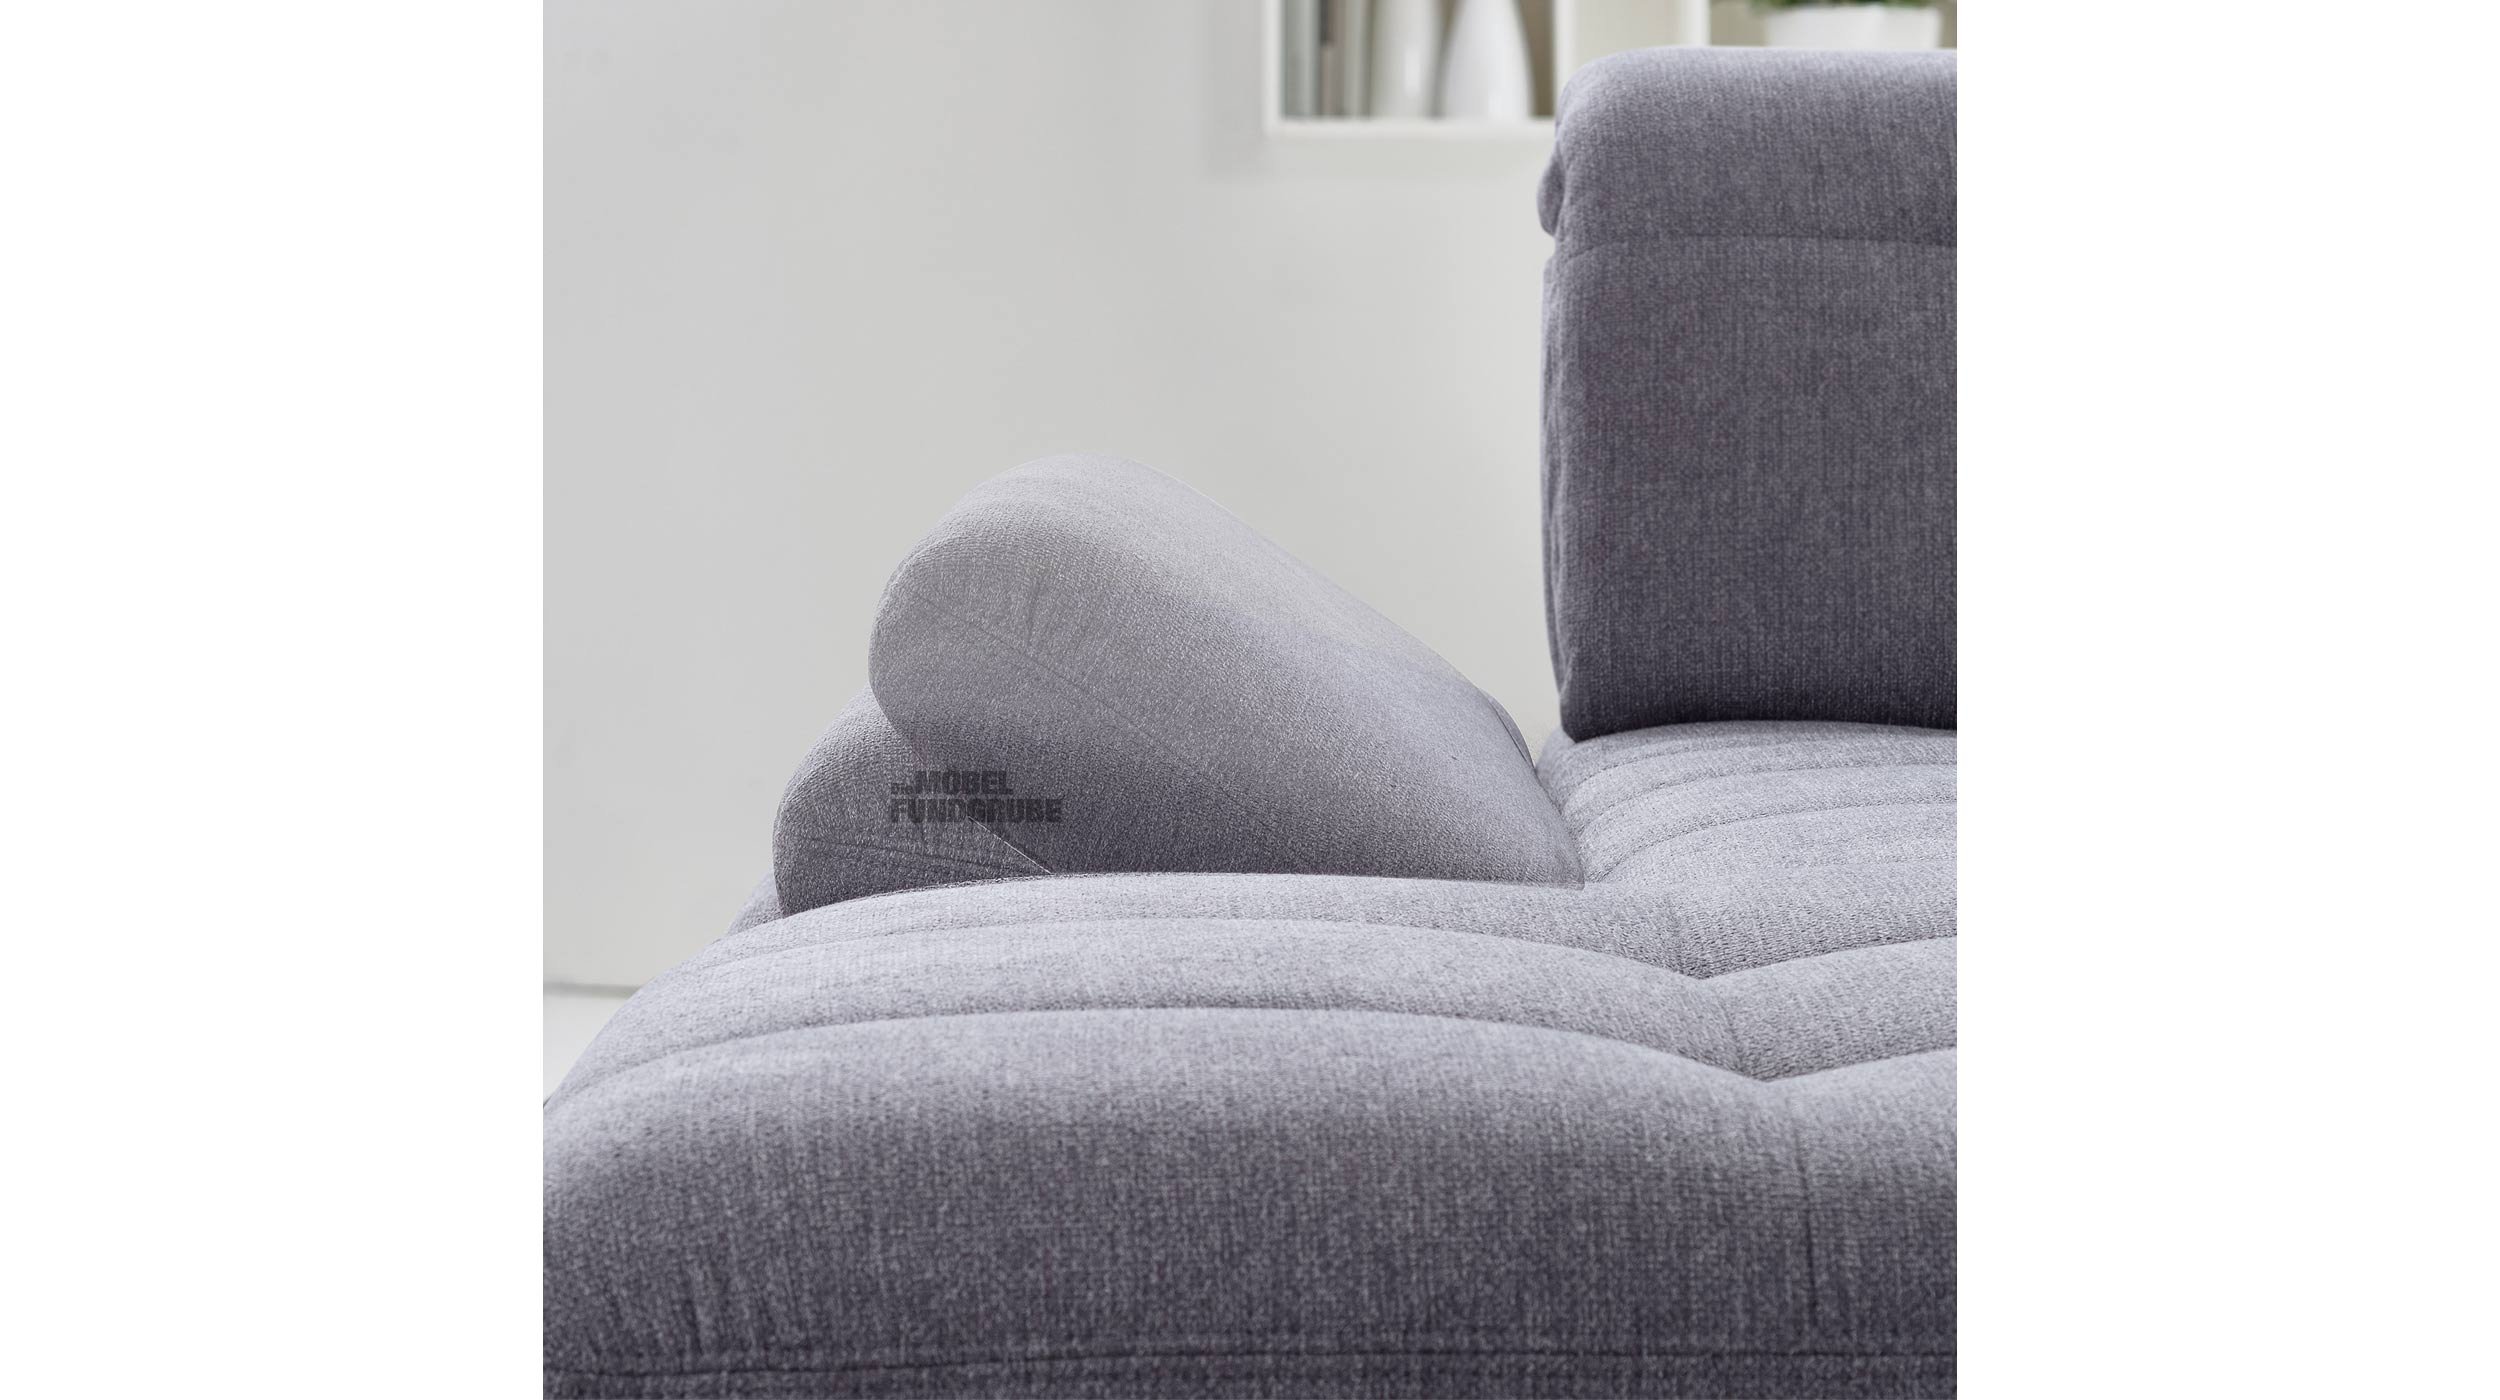 Wohnlandschaft Sofaprogramm grau - Premium Version - SANTA FE